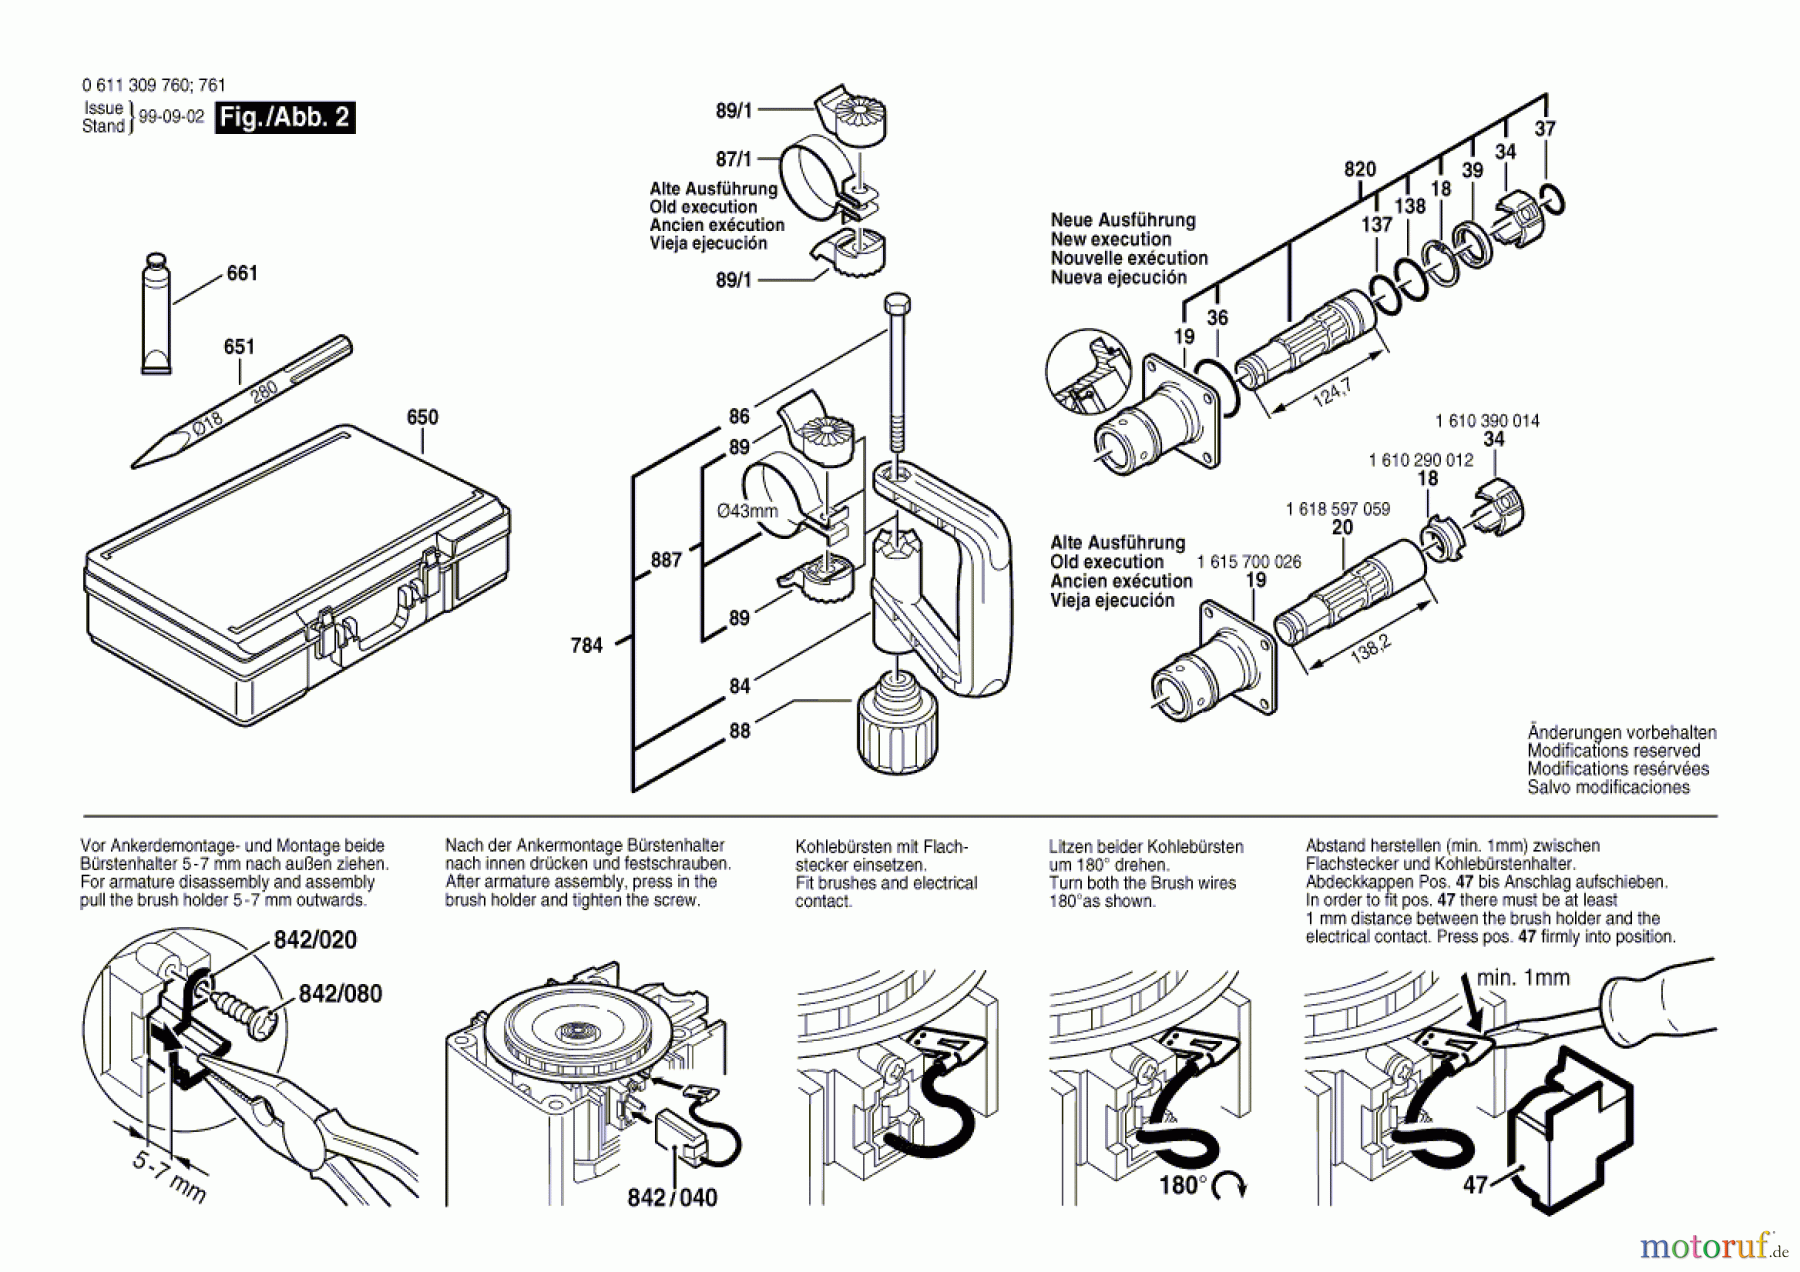  Bosch Werkzeug Schlaghammer MH 12 E Seite 2